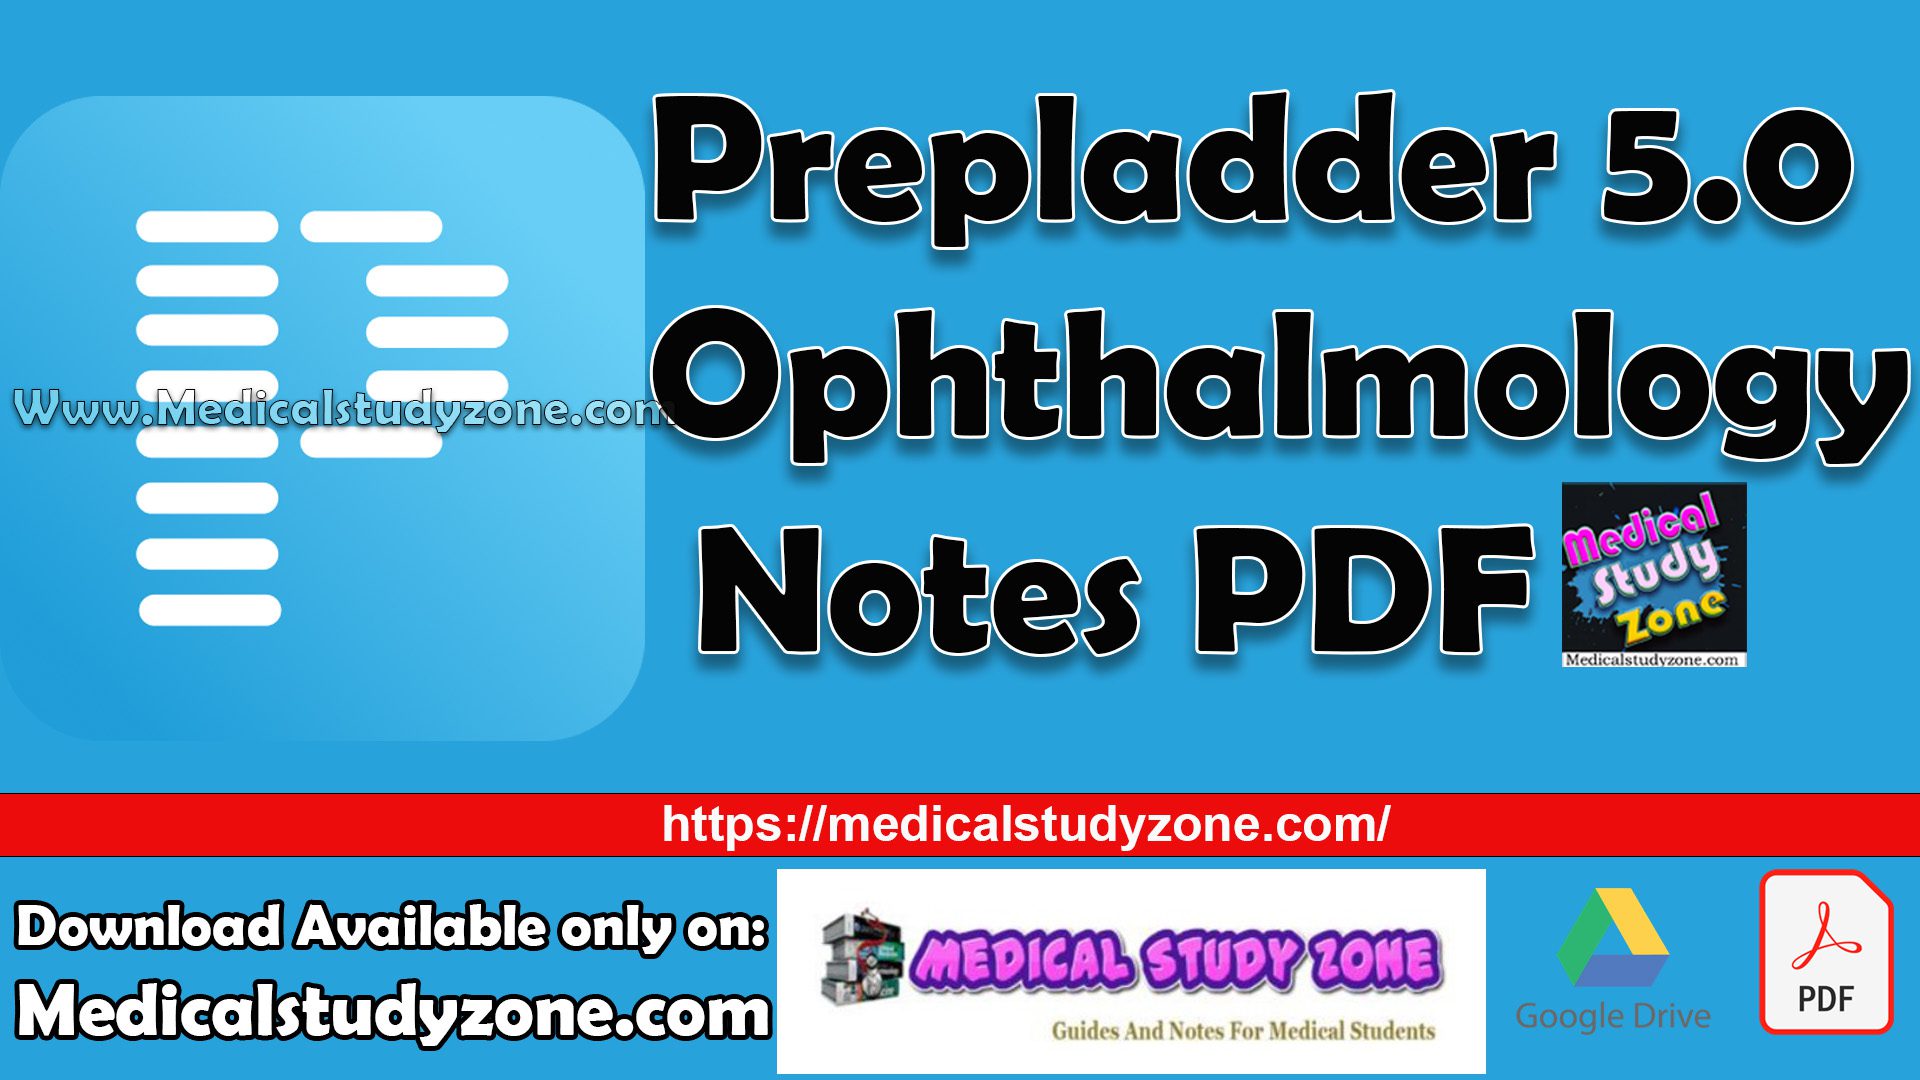 Prepladder 5.0 Ophthalmology Notes PDF Free Download